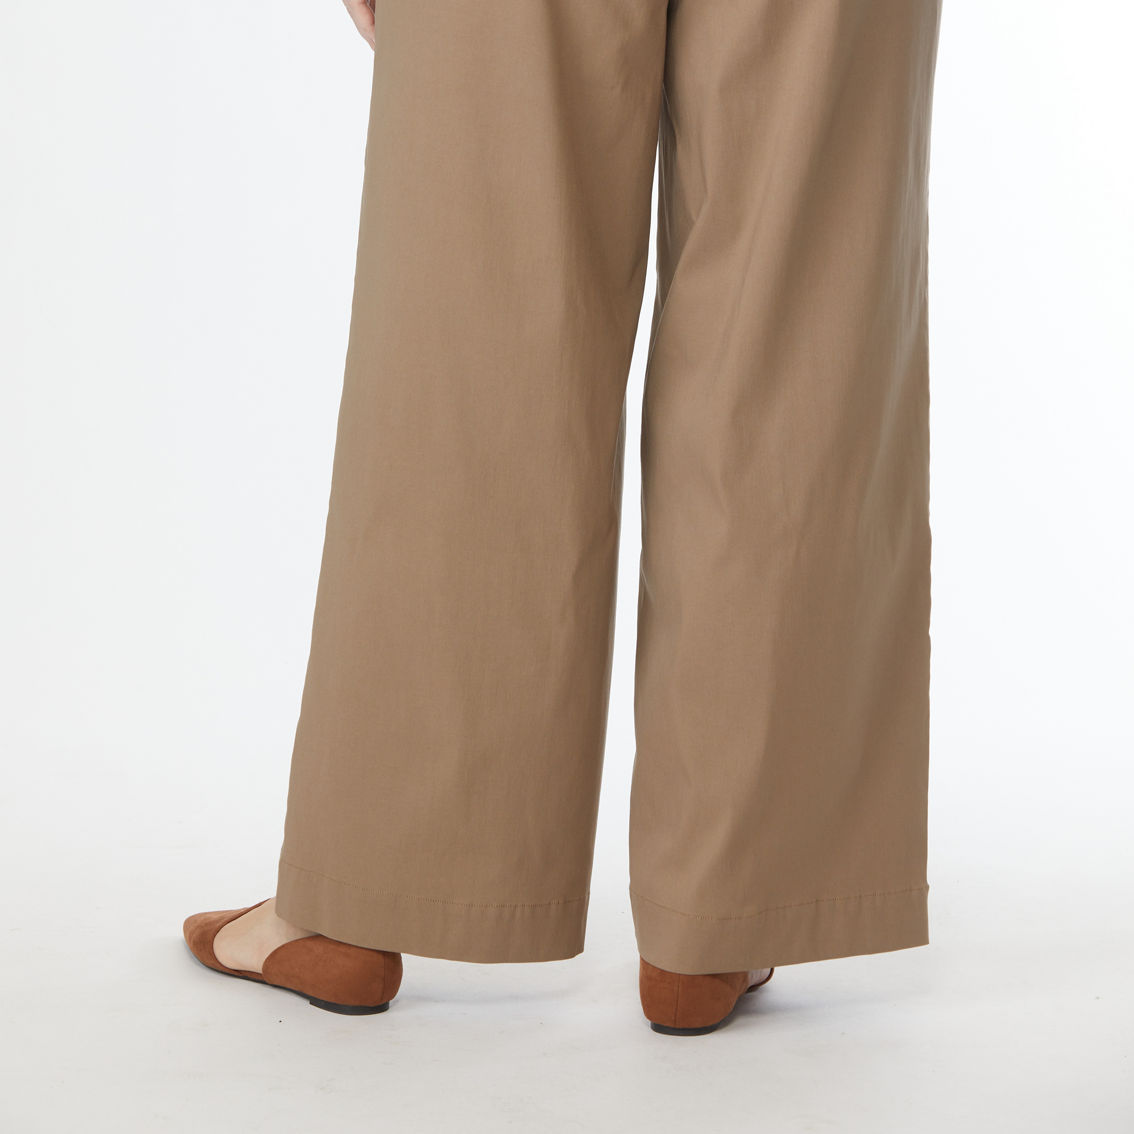 JW Plus Size Millennium Pants - Image 2 of 3